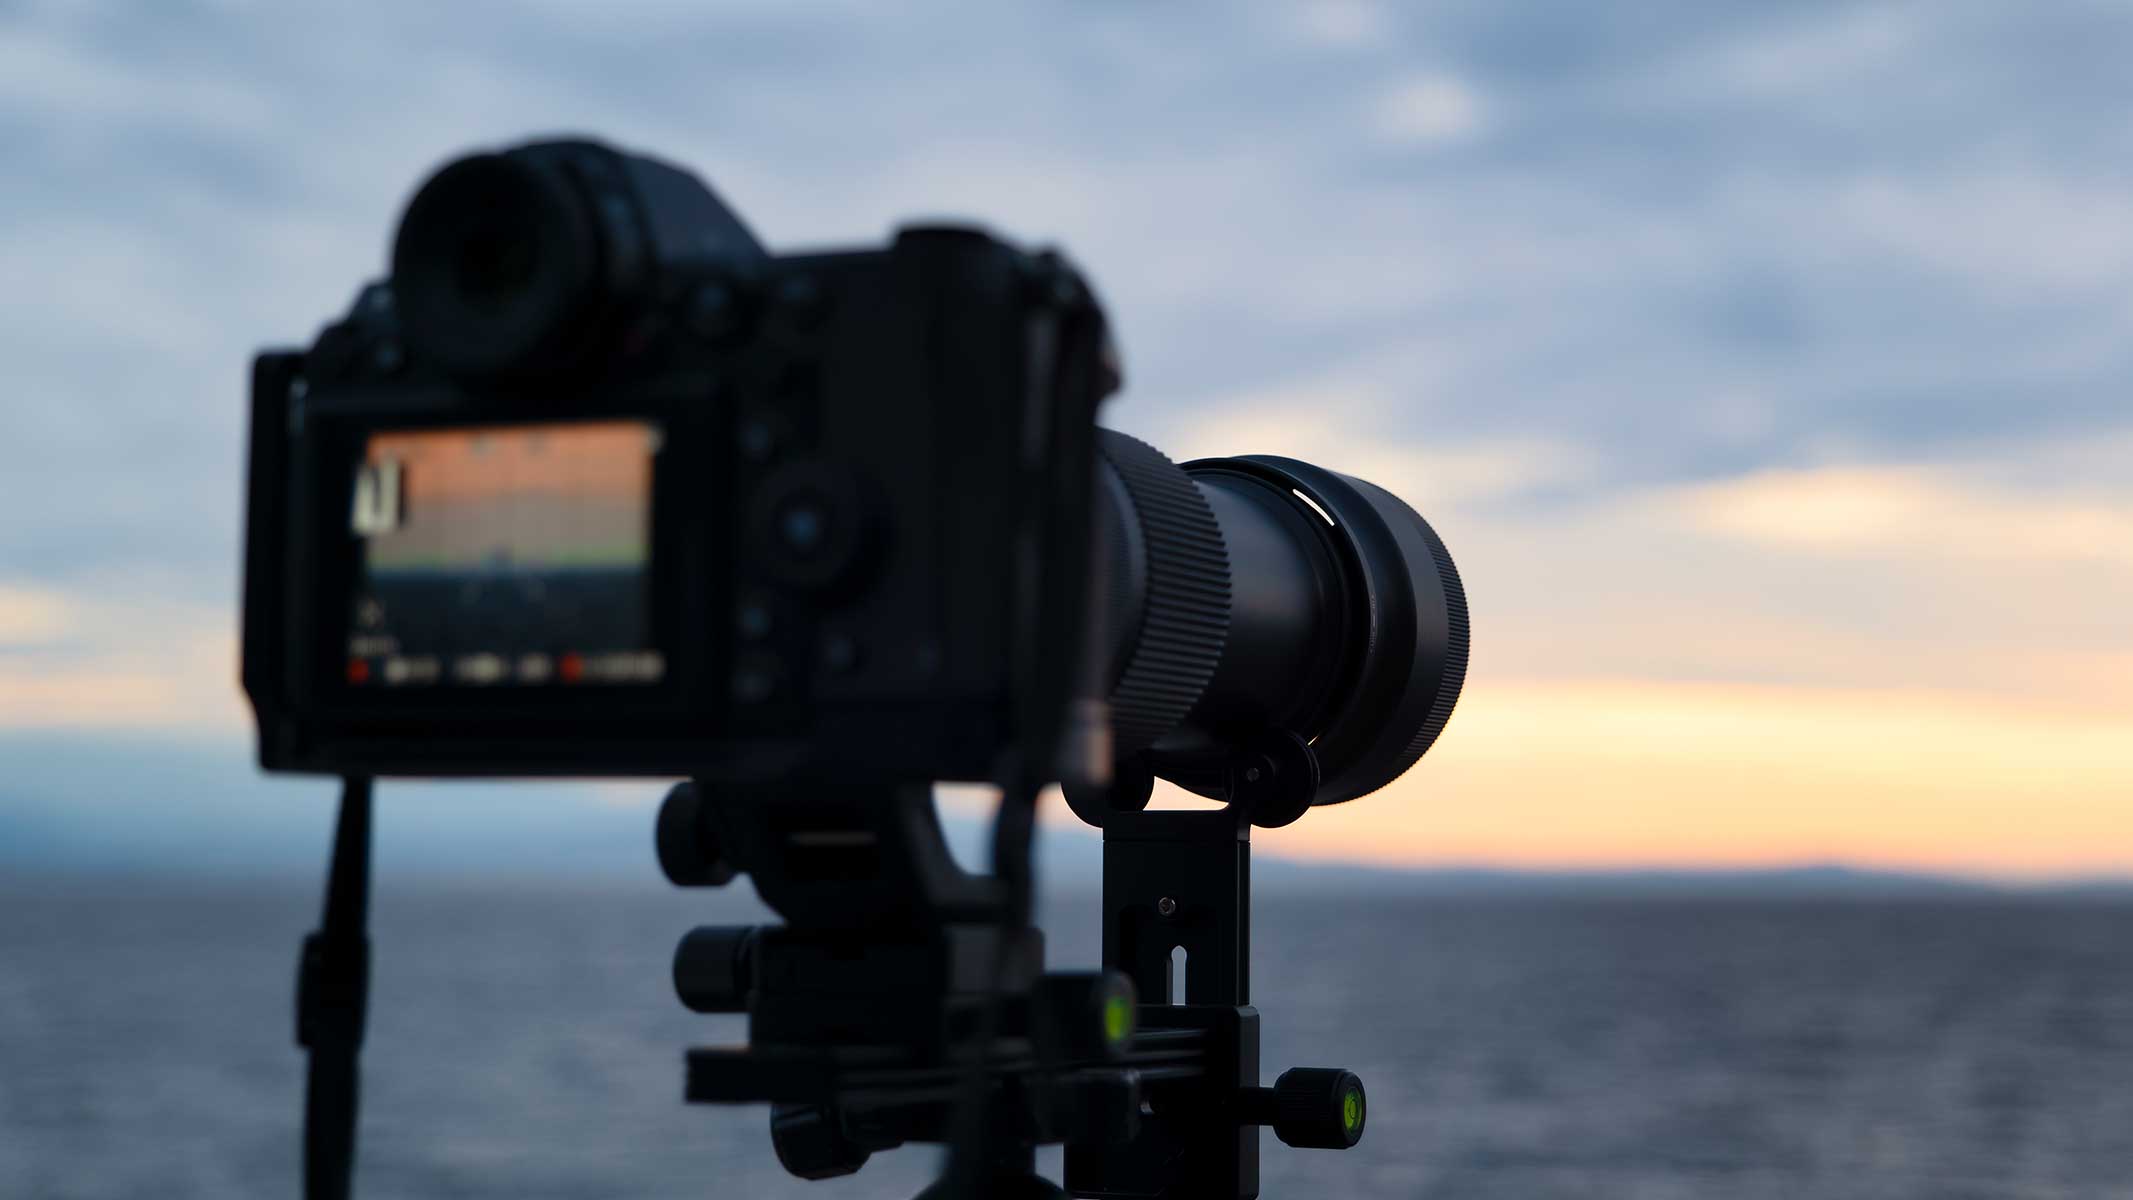 Mirrorless camera on a tripod at dusk